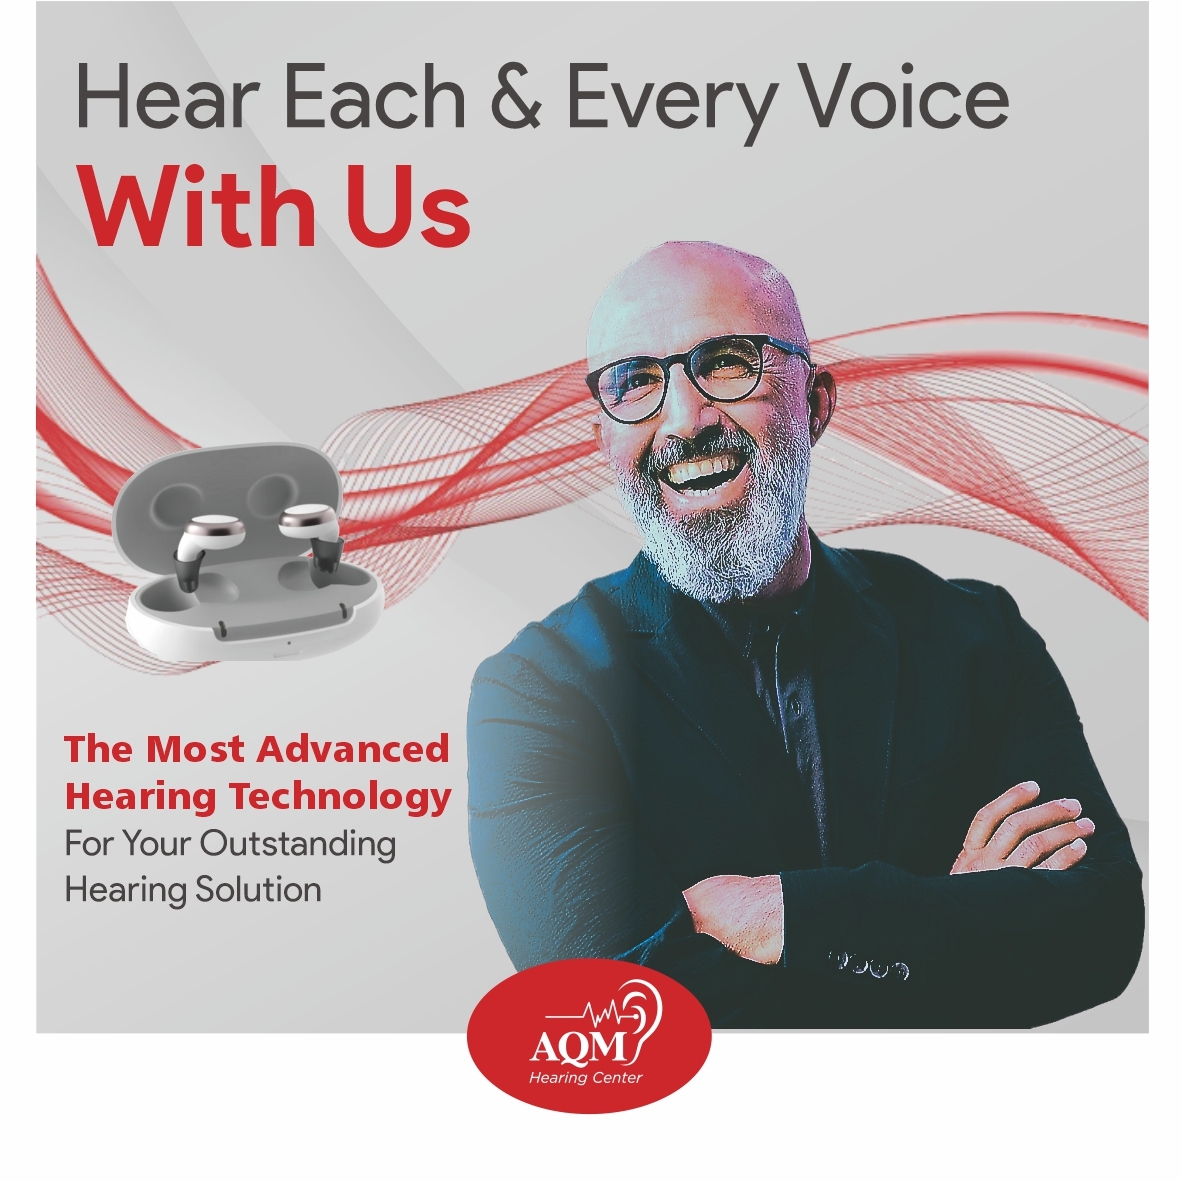 (c) Aqm-hearingcenter.com